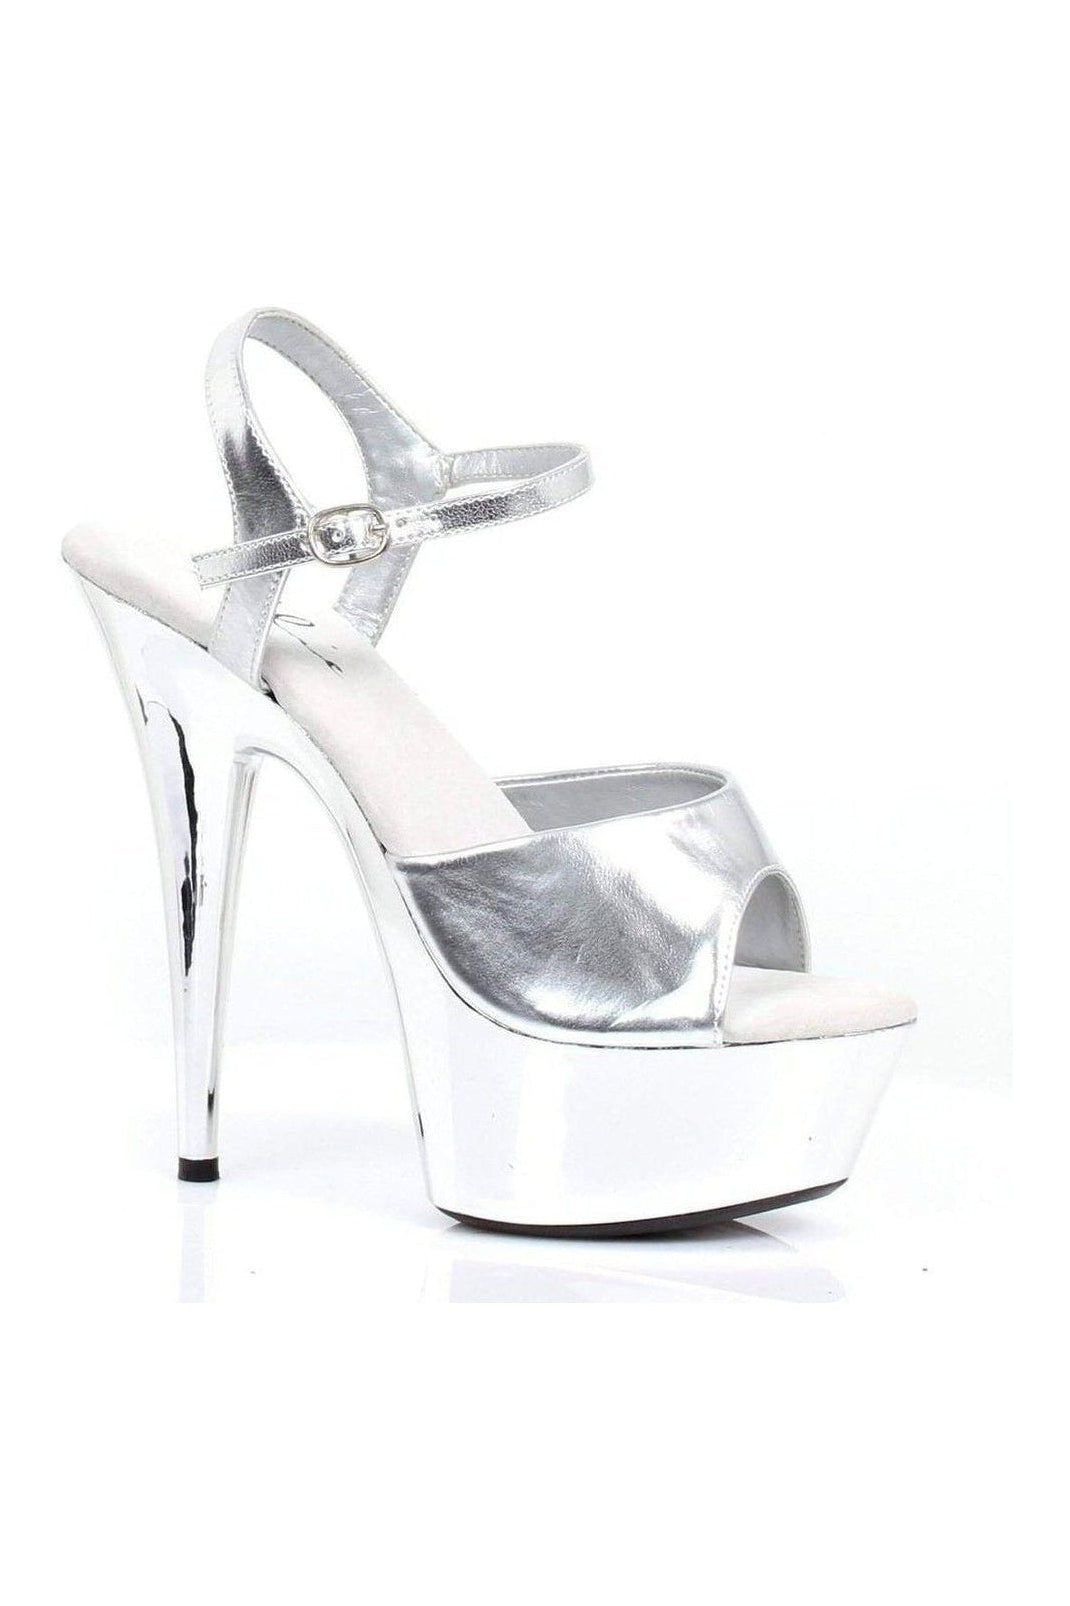 609-CHROME Platform Sandal | Silver Faux Leather-Ellie Shoes-Silver-Sandals-SEXYSHOES.COM